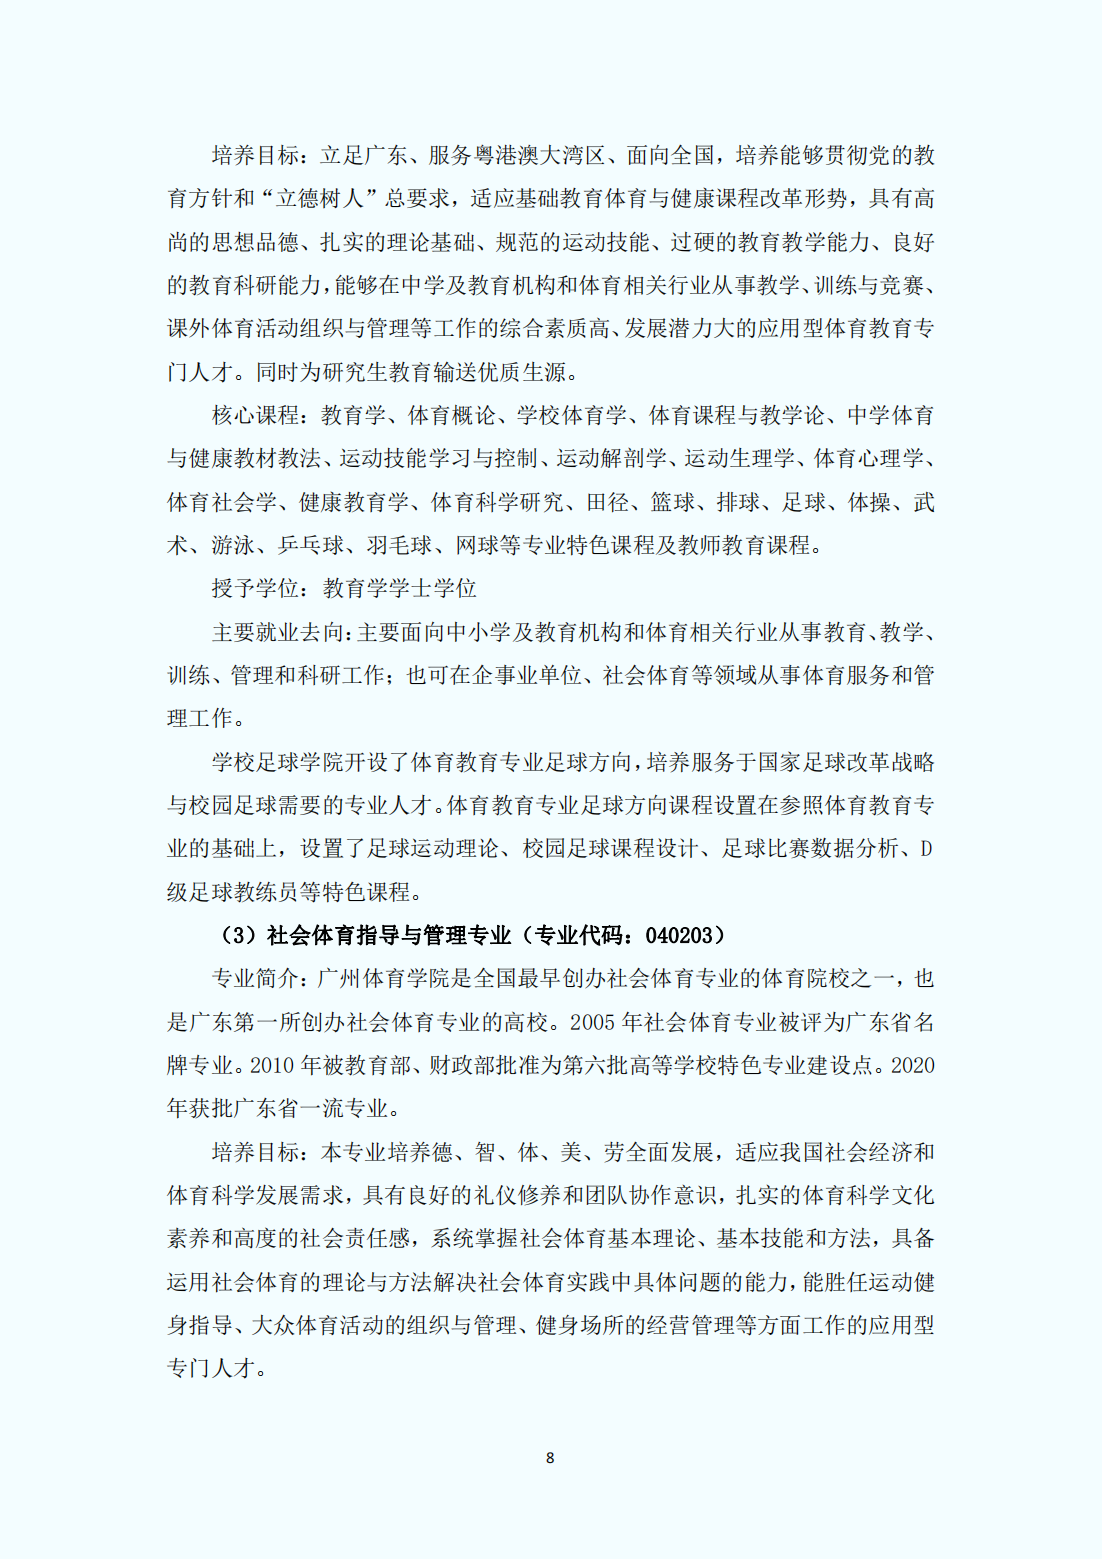 广州体育学院2023年普通本科招生报考指南